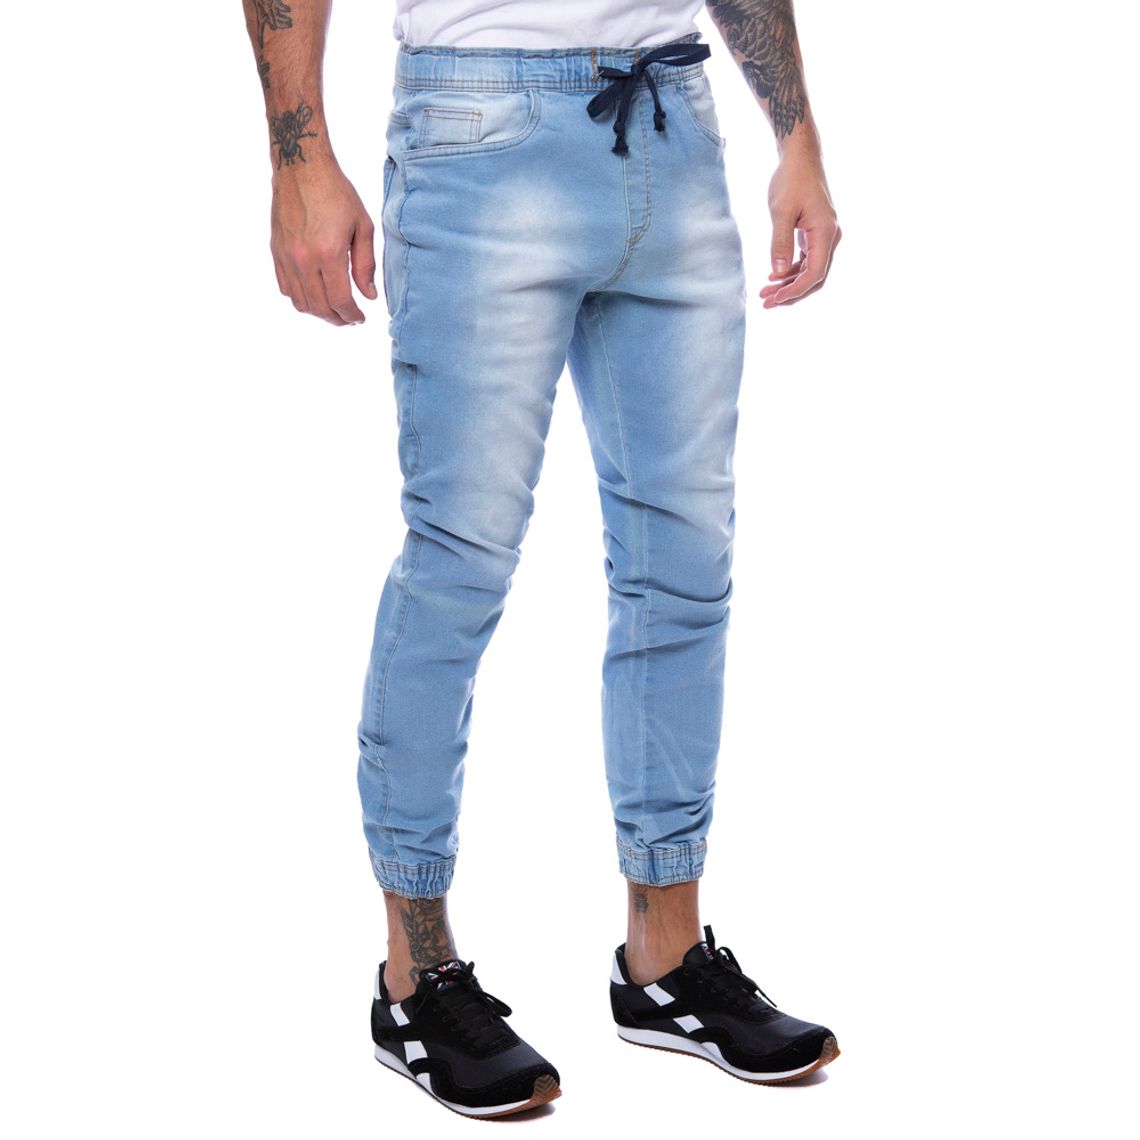 calca jeans masculina jogger